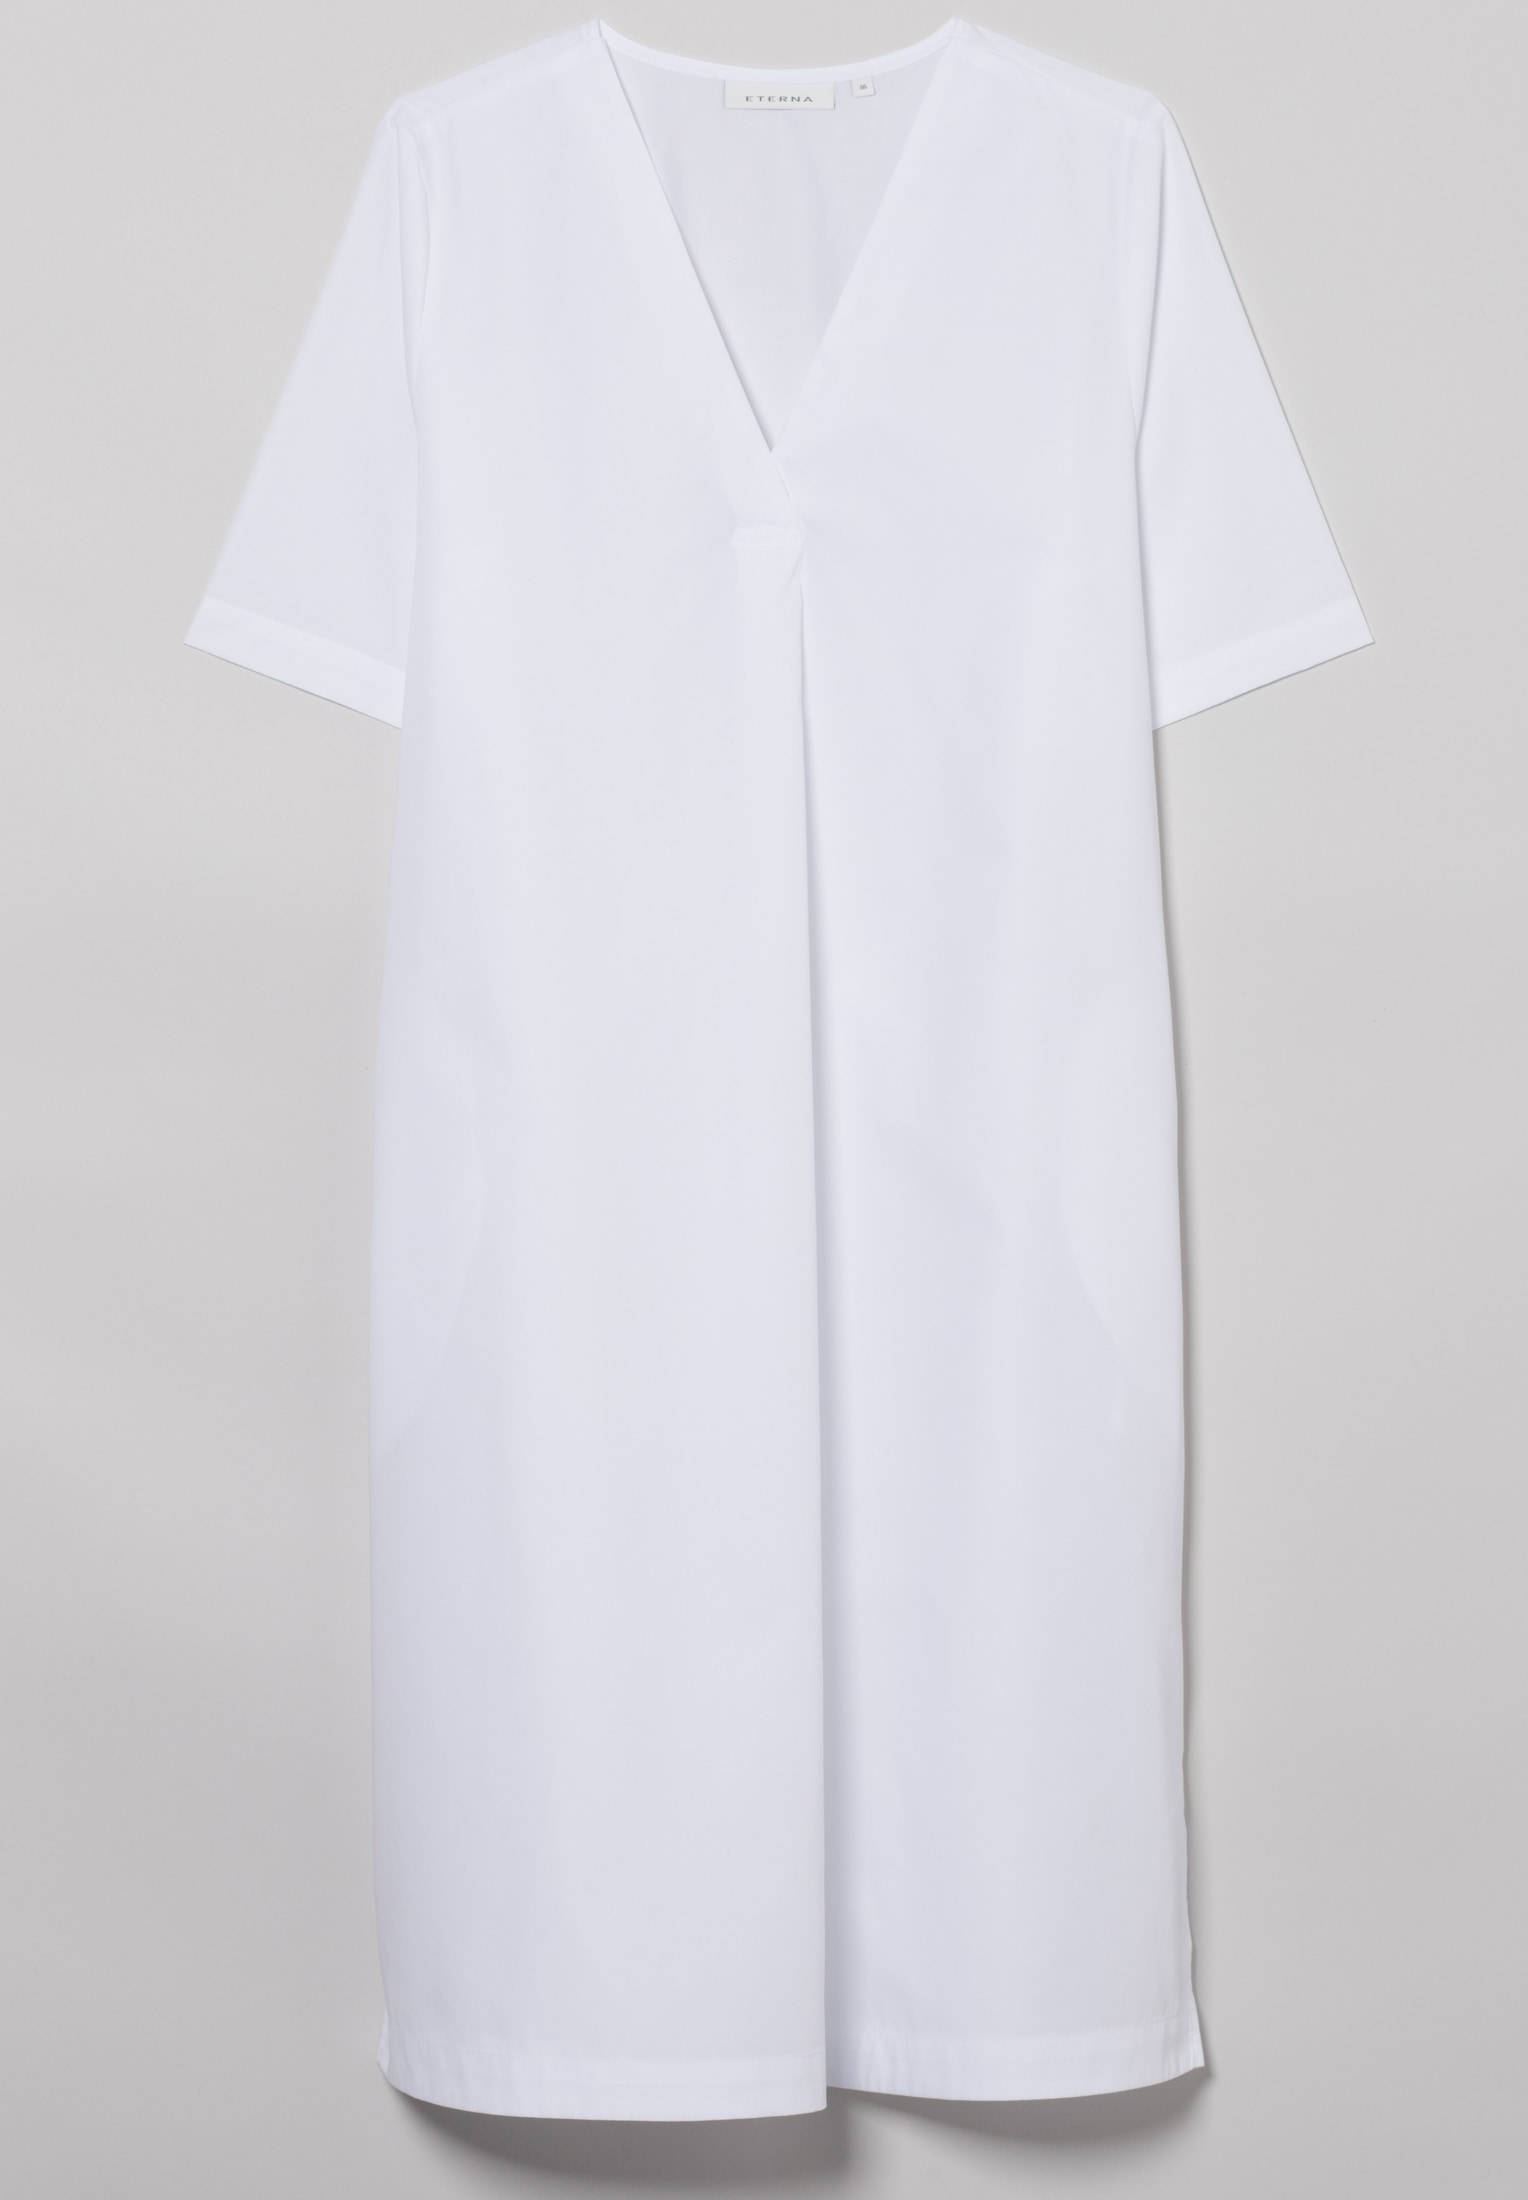 Blusenkleid in weiß | 2DR00211-00-01-40-1/2 40 Kurzarm weiß | | unifarben 